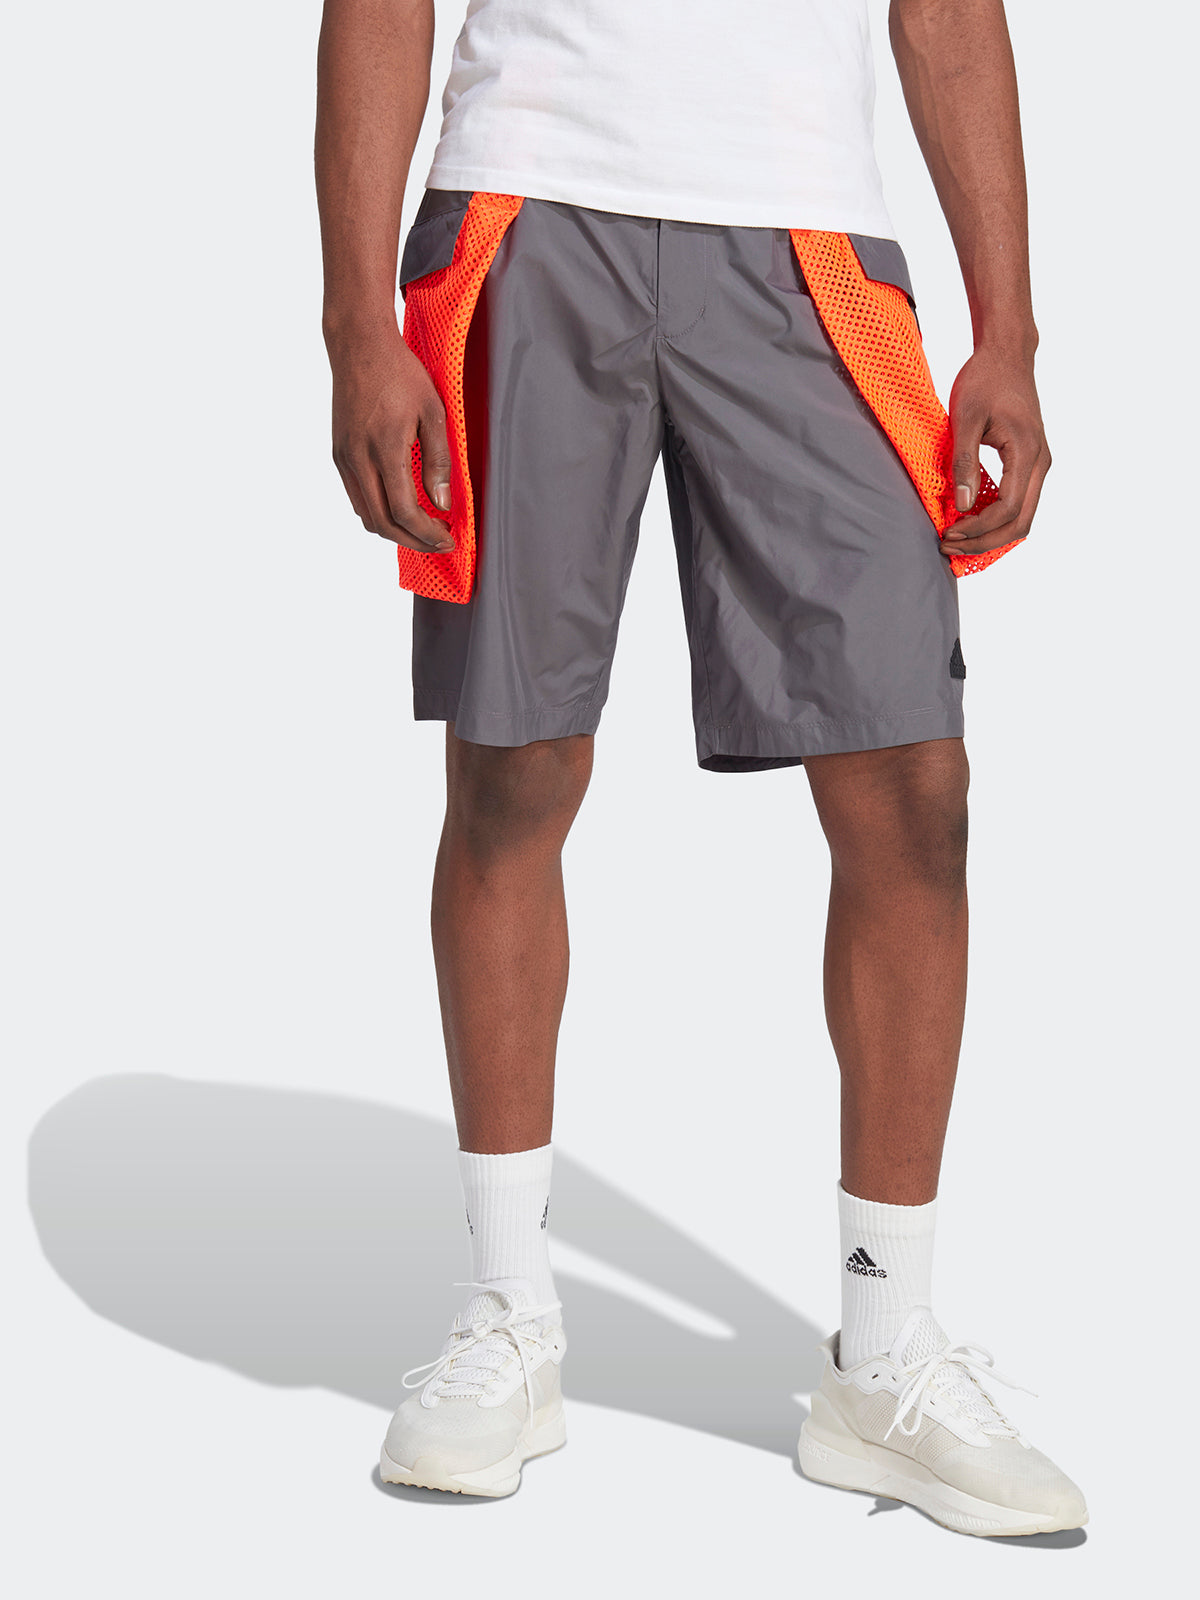 מכנסי דגמ"ח עמידים למים- adidas performance|אדידס פרפורמנס